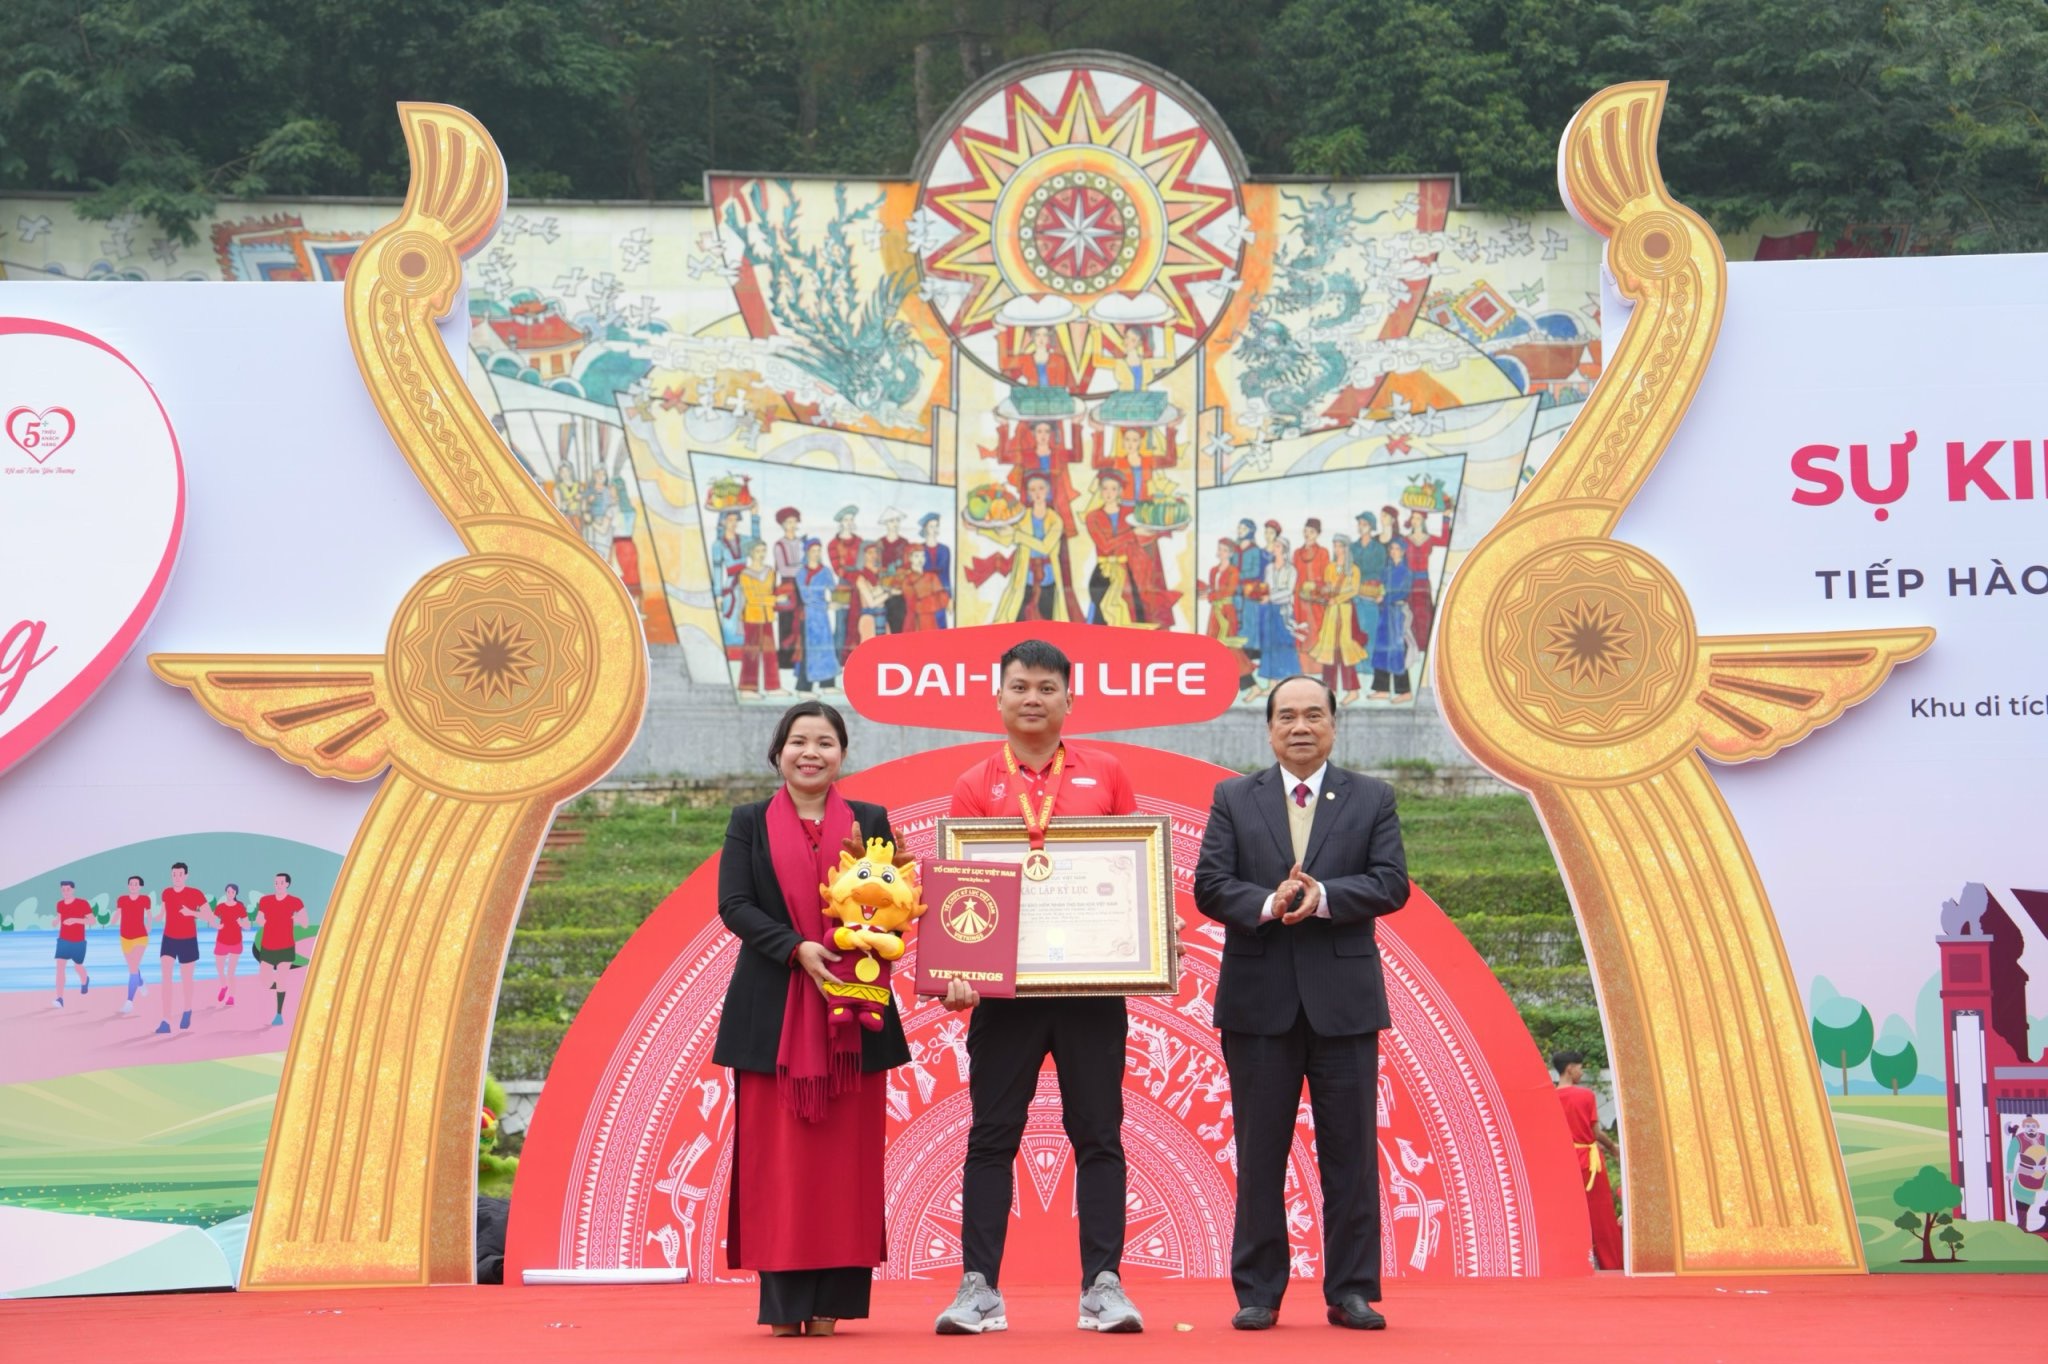 Ông Đặng Hồng Hải – Tổng Giám đốc Dai-ichi Life Việt Nam (giữa) vinh dự nhận Chứng nhận Kỷ lục Việt Nam - Chương trình Thể dục Thể thao trực tuyến để gây quỹ vì cộng đồng có tổng số ki-lô-mét quy đổi dài nhất